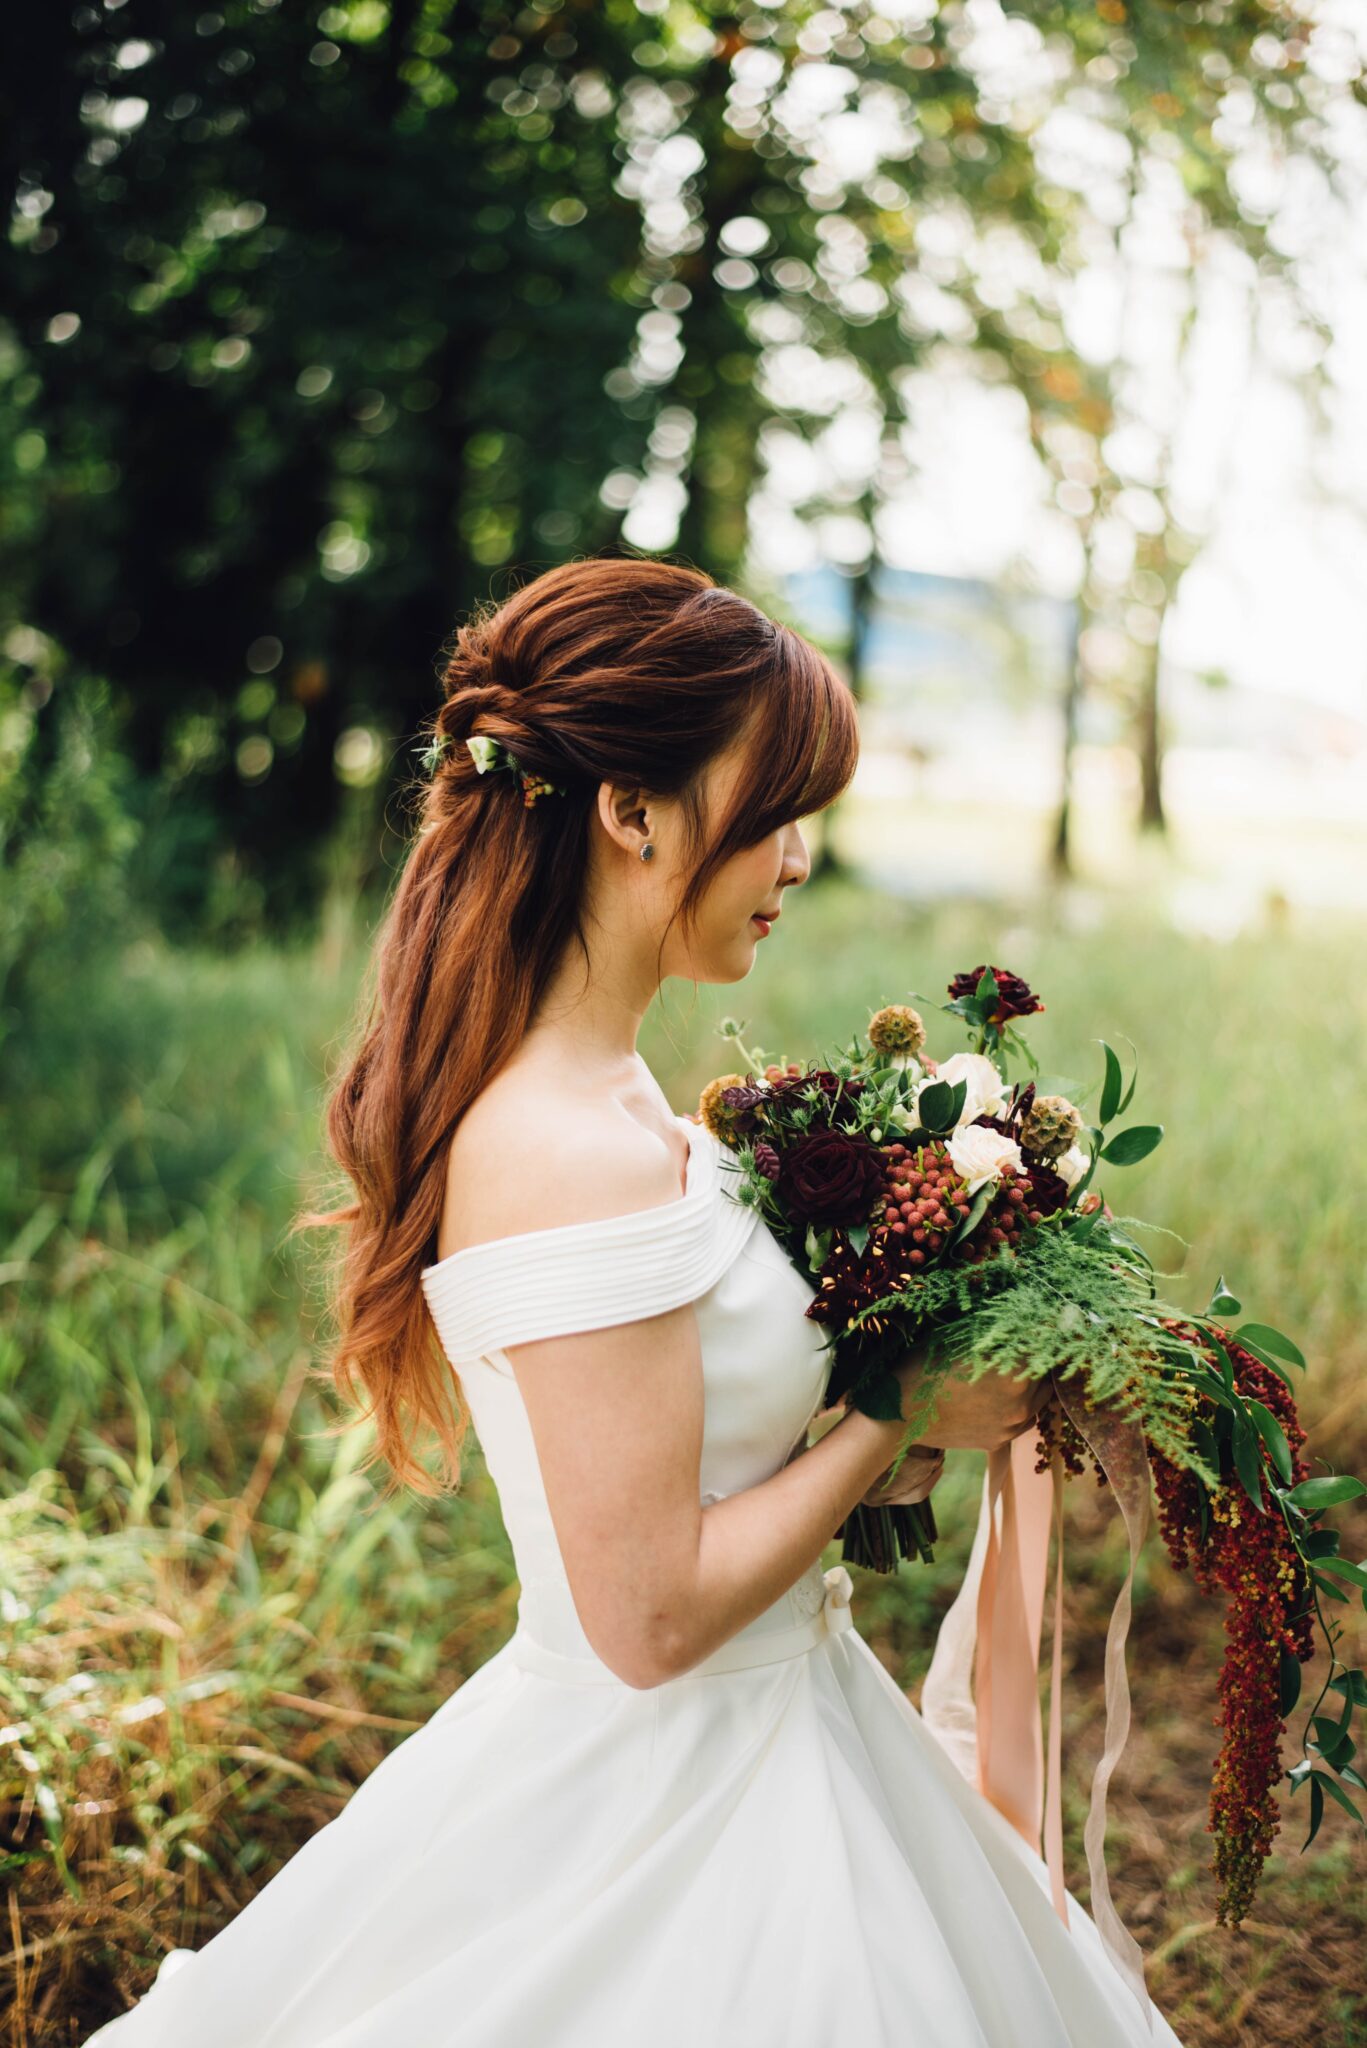 Empowering Weddings: Professional Wellington Wedding Photography